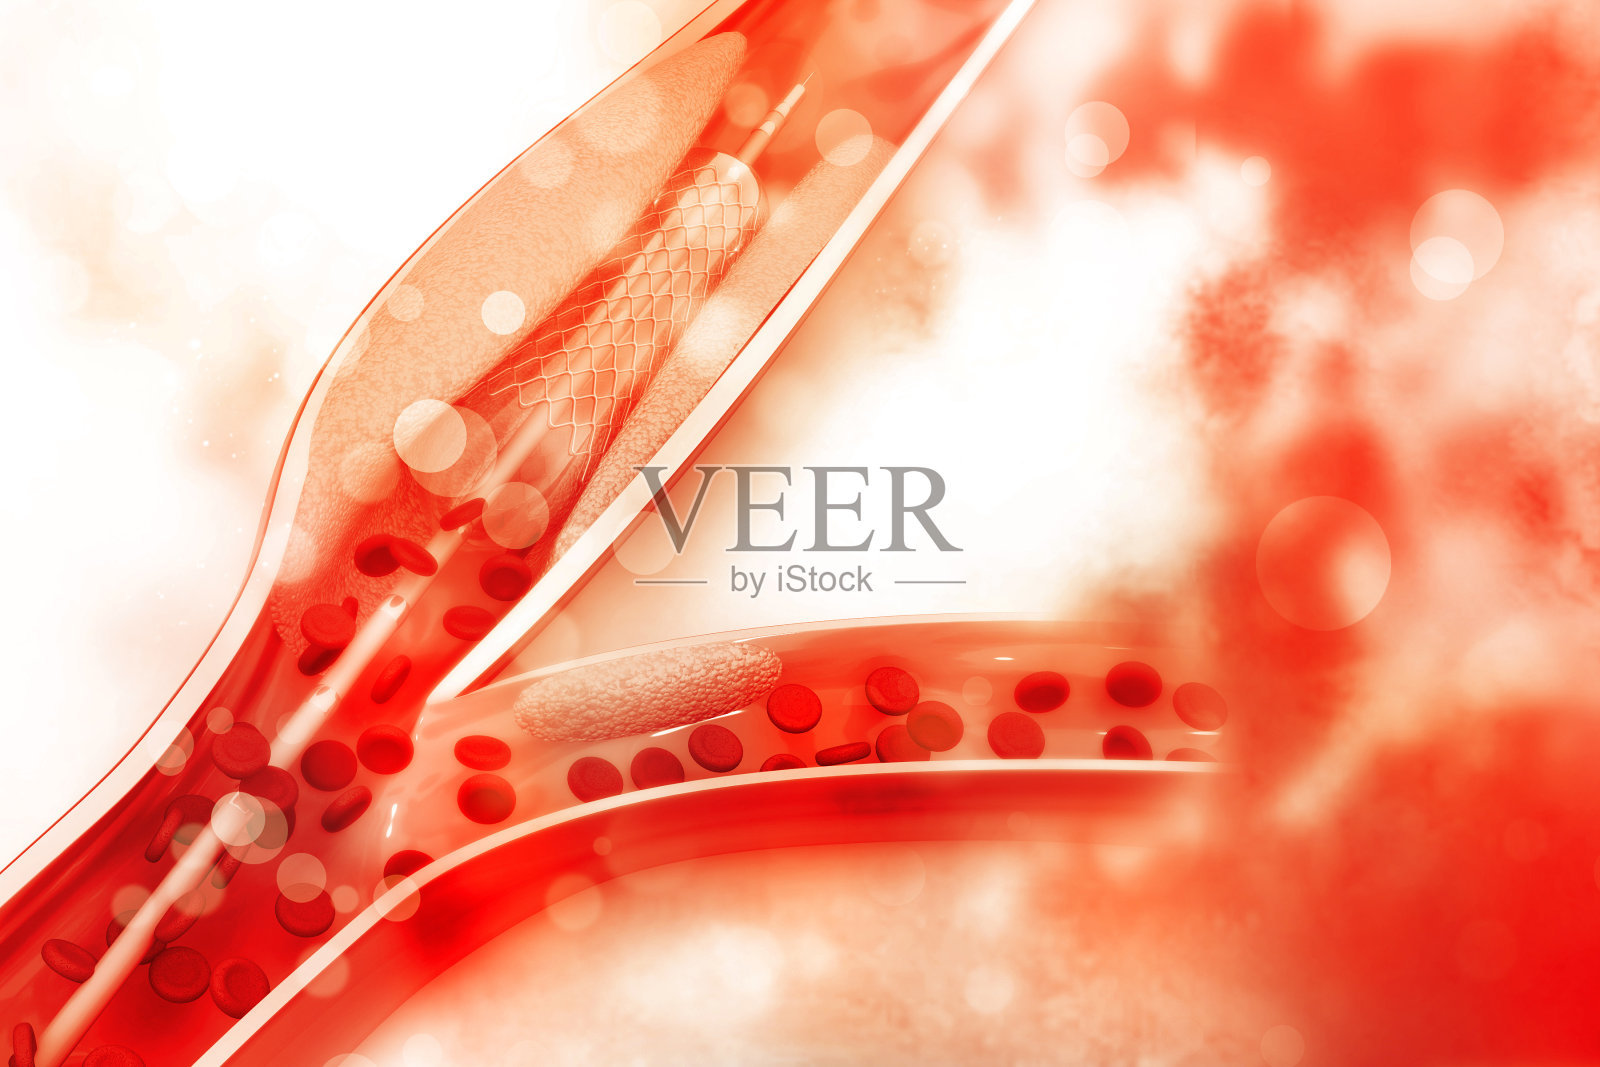 植入球囊的支架血管成形术照片摄影图片